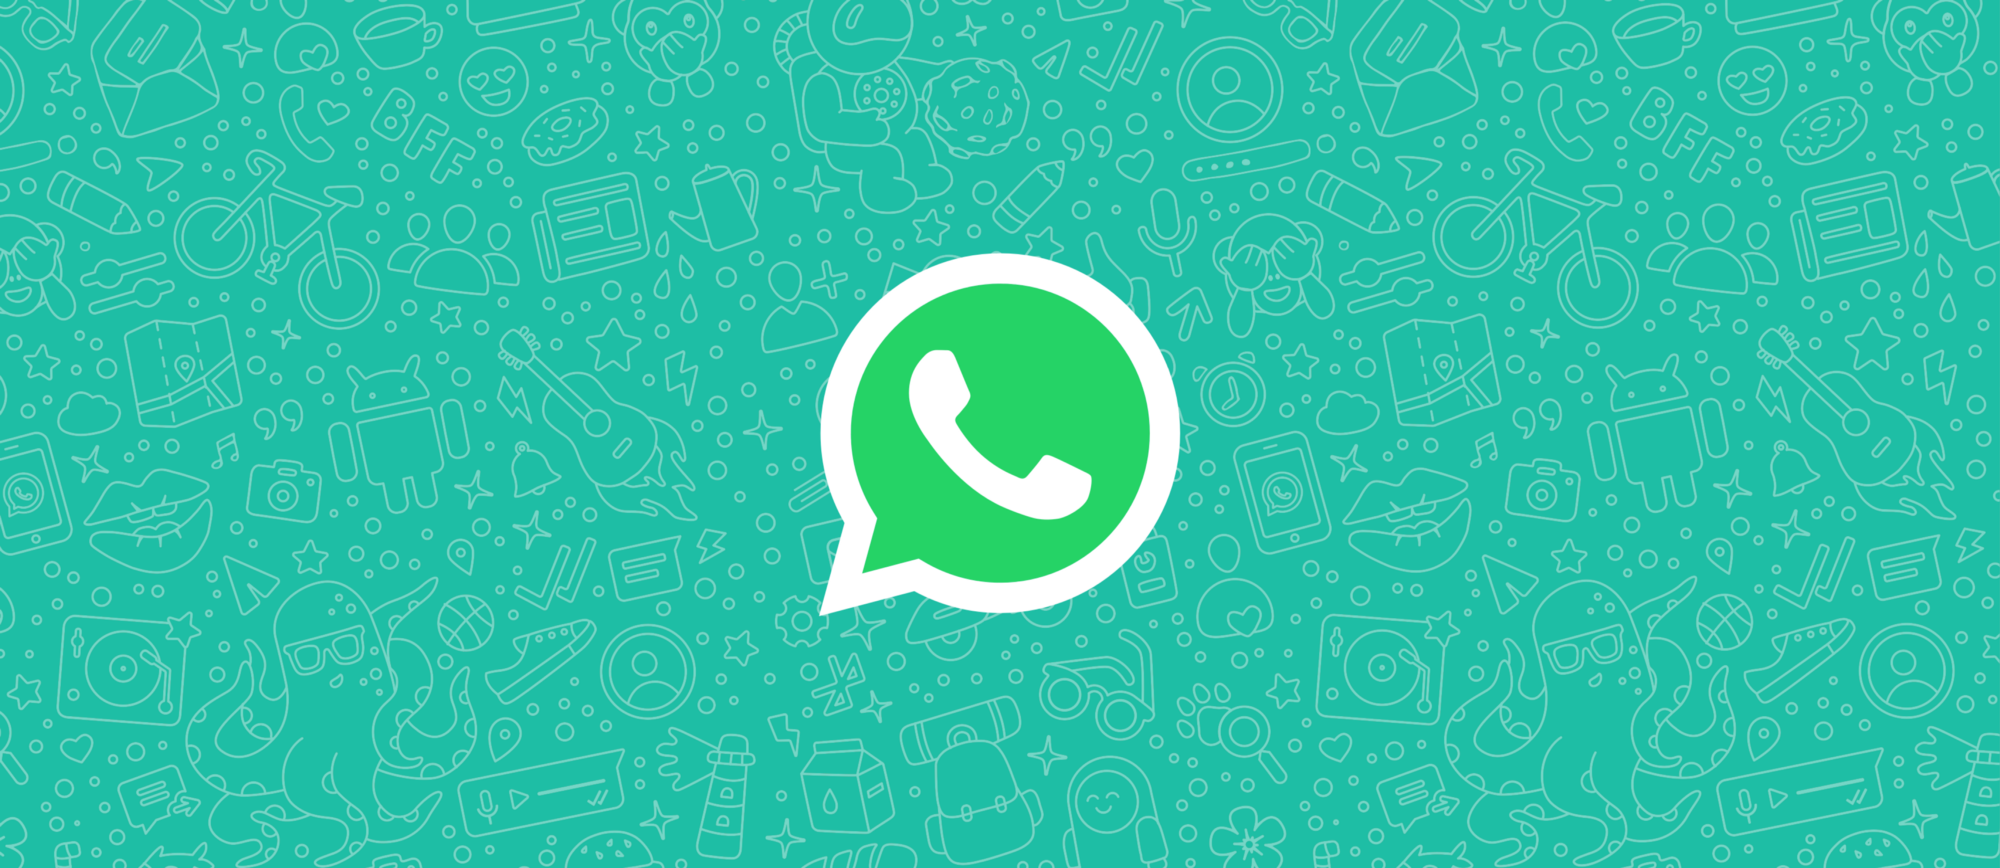 Millenicom’dan abonelerine hızlı ve pratik çözüm: Whatsapp Destek Hattı